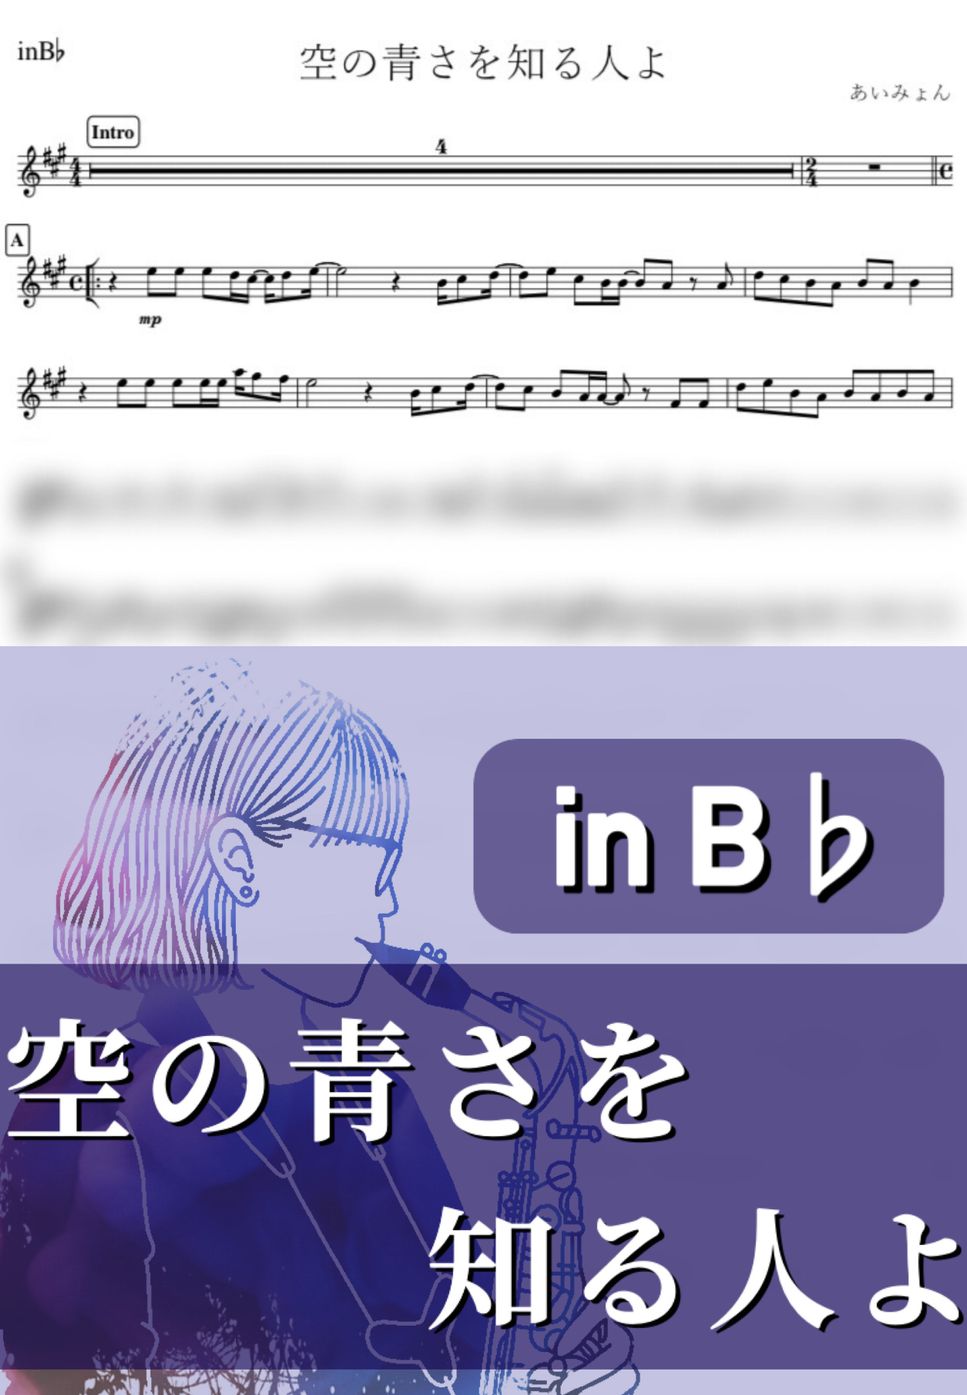 あいみょん - 空の青さを知る人よ (B♭) by kanamusic